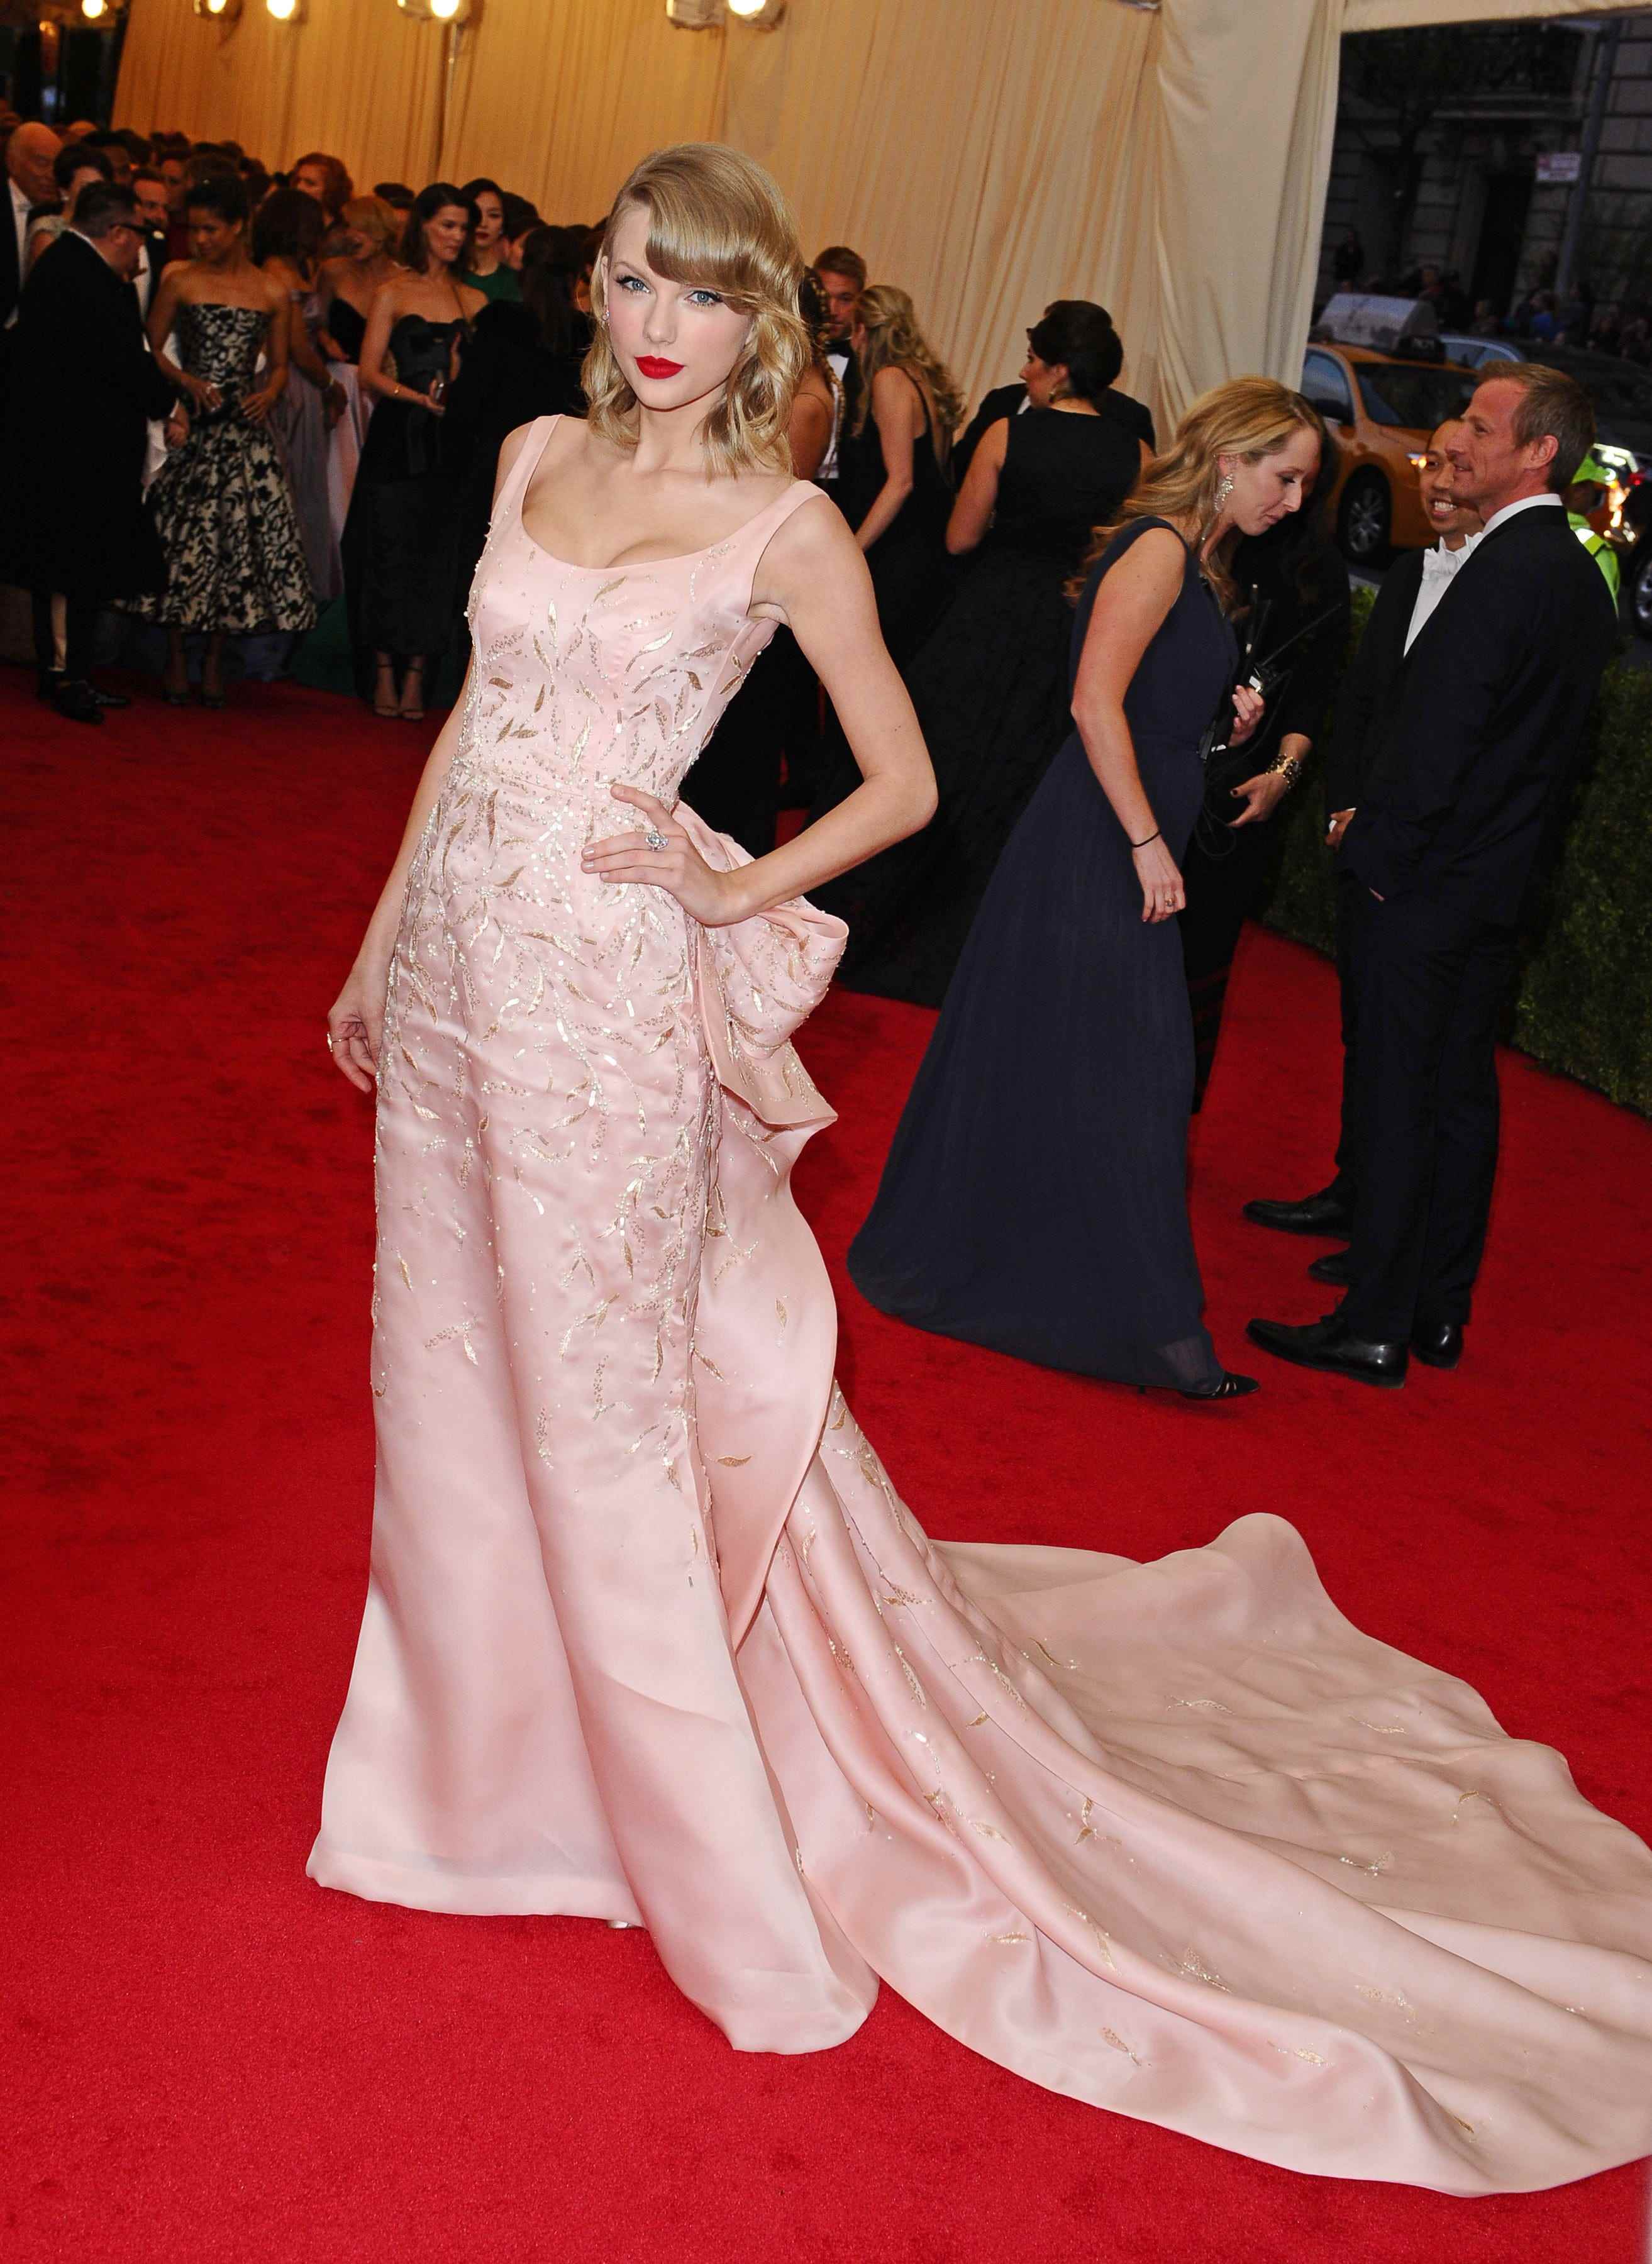 Taylor Swift bei der Met Gala 2014 in einem zartrosa Kleid